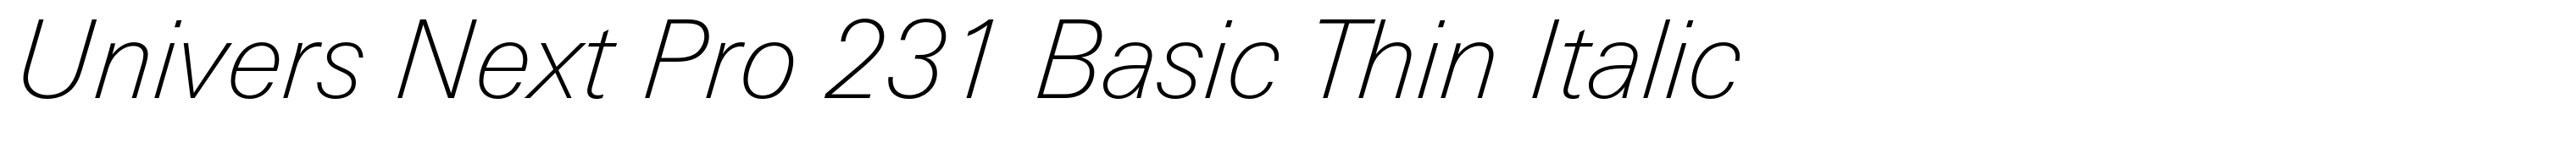 Univers Next Pro 231 Basic Thin Italic